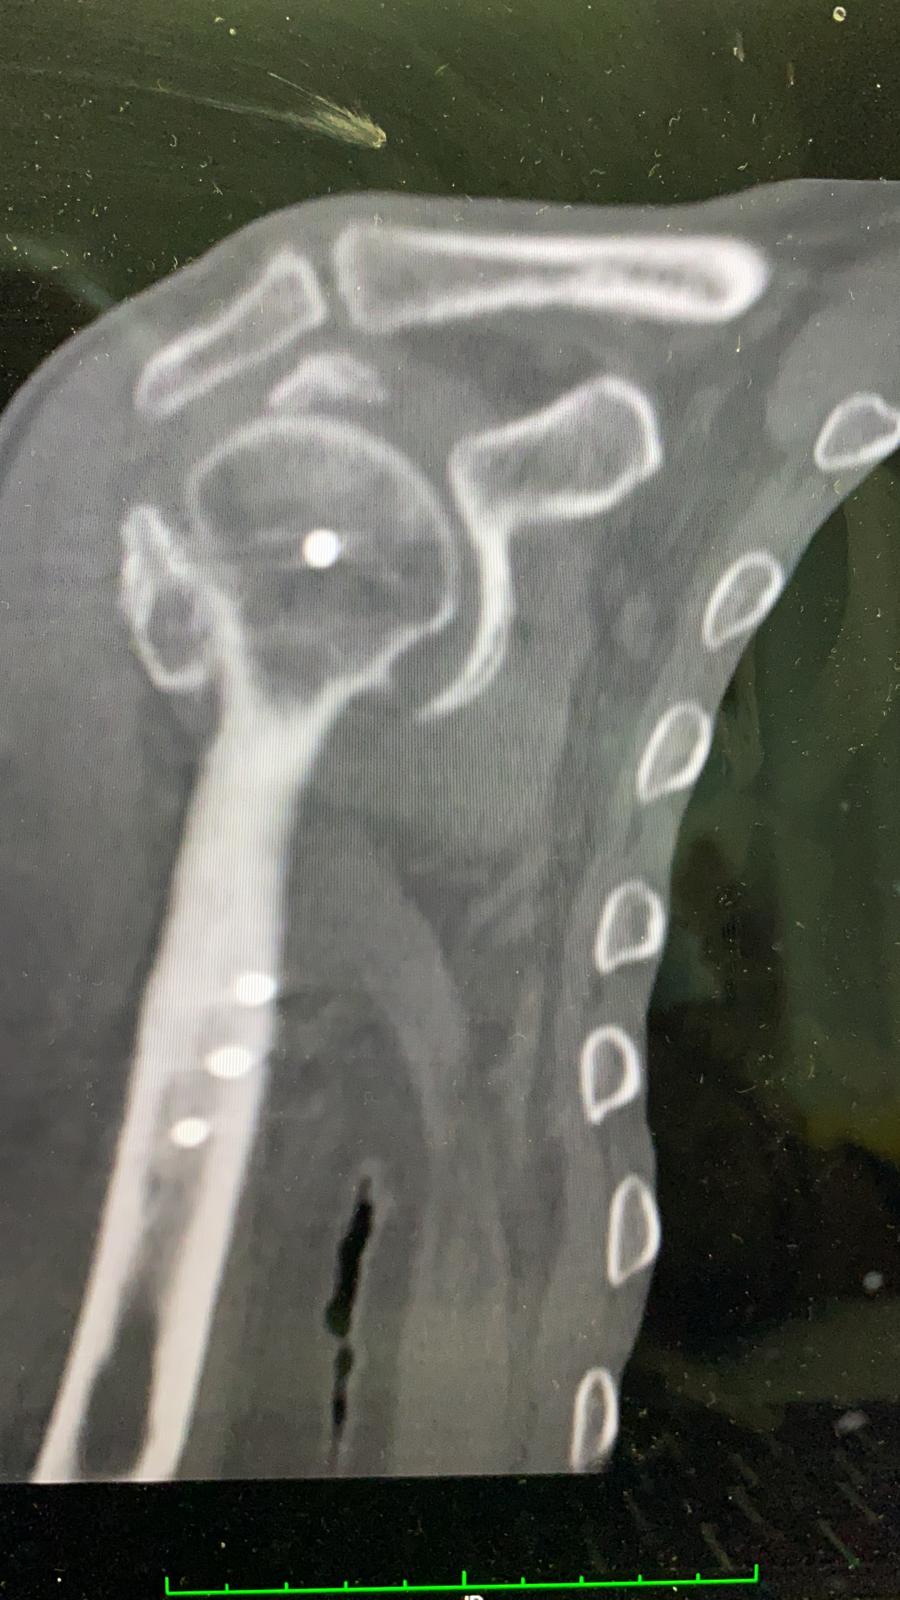 radiografie frattura dislocazione trochite